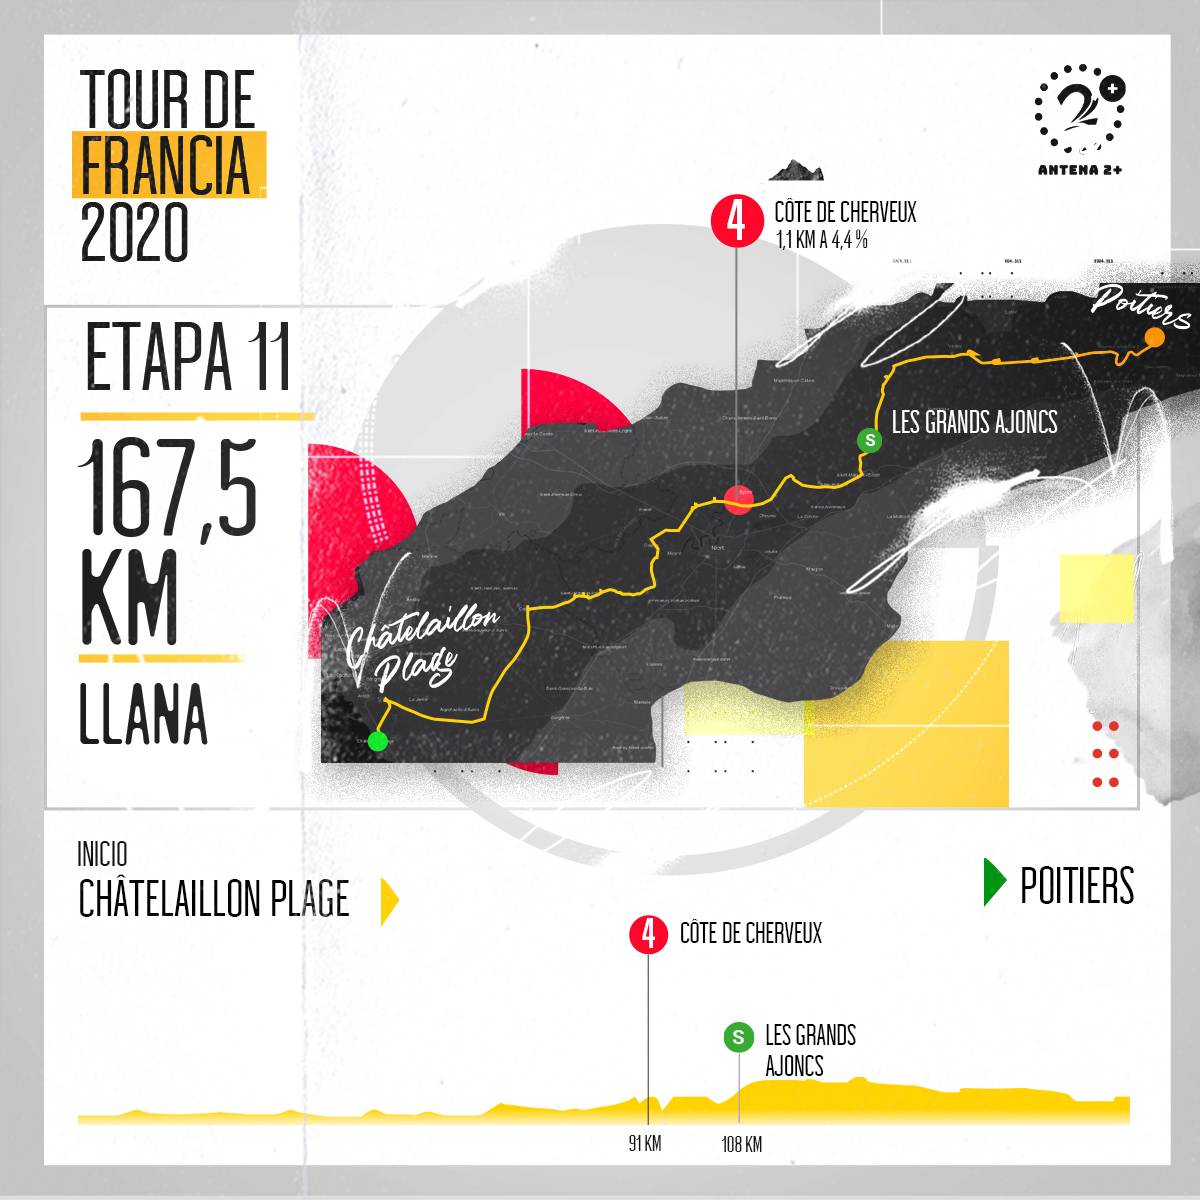 Tour de Francia, altimetrías: Chatelaillon - Plage-Poitiers, 167 kilómetros, etapa 11 